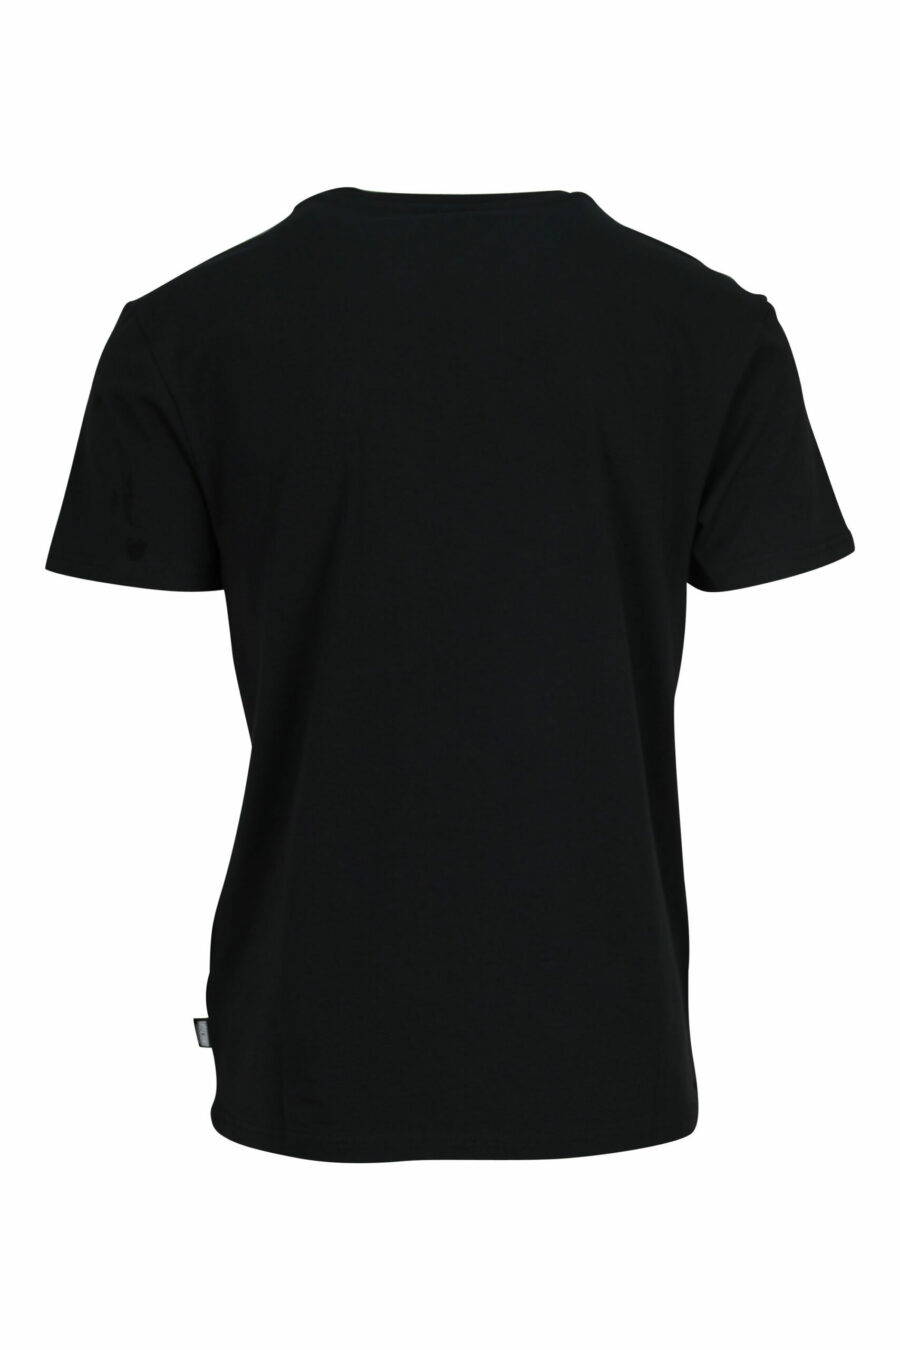 T-shirt preta com mini logótipo do urso "underbear" em borracha branca - 667113602639 1 scaled